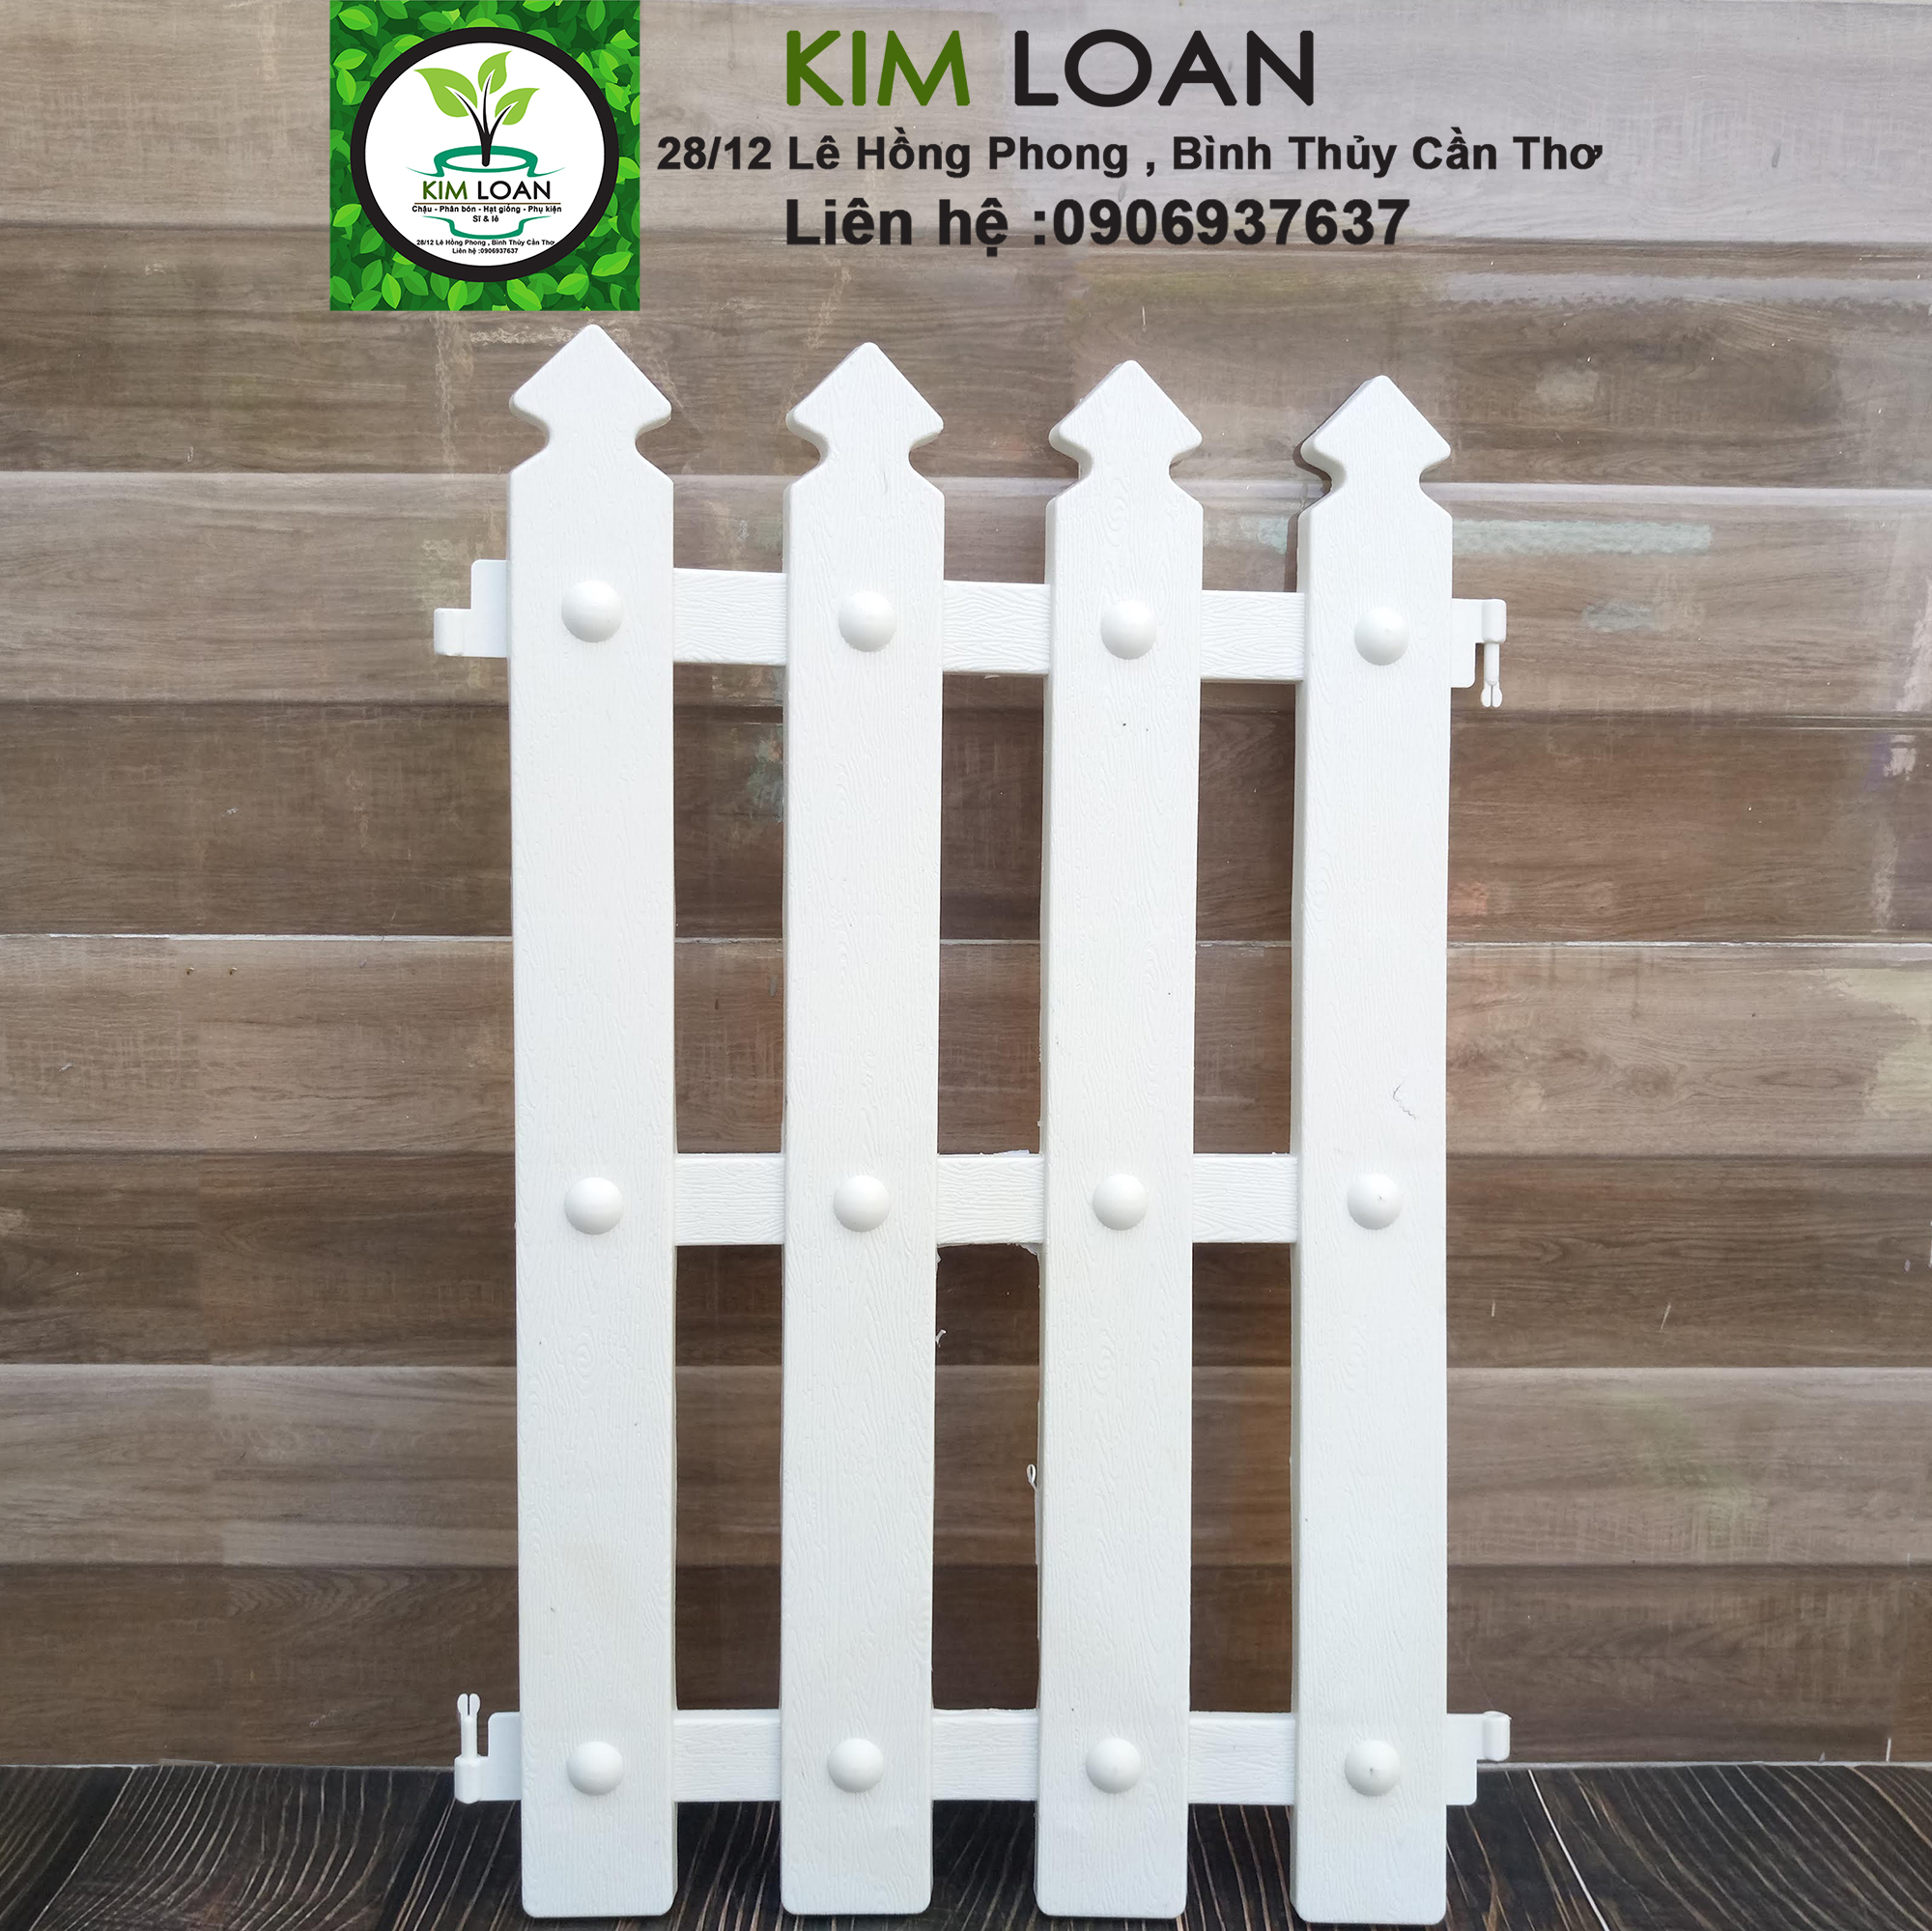 Hàng rào nhựa: Hàng rào nhựa là lựa chọn hàng đầu cho việc bảo vệ an ninh cho gia đình, cơ quan và tòa nhà. Với đa dạng mẫu mã, phù hợp với nhiều phong cách kiến trúc khác nhau, hàng rào nhựa còn có ưu điểm là dễ dàng lắp đặt và bảo trì, giúp cho cuộc sống của bạn trở nên tiện nghi hơn.